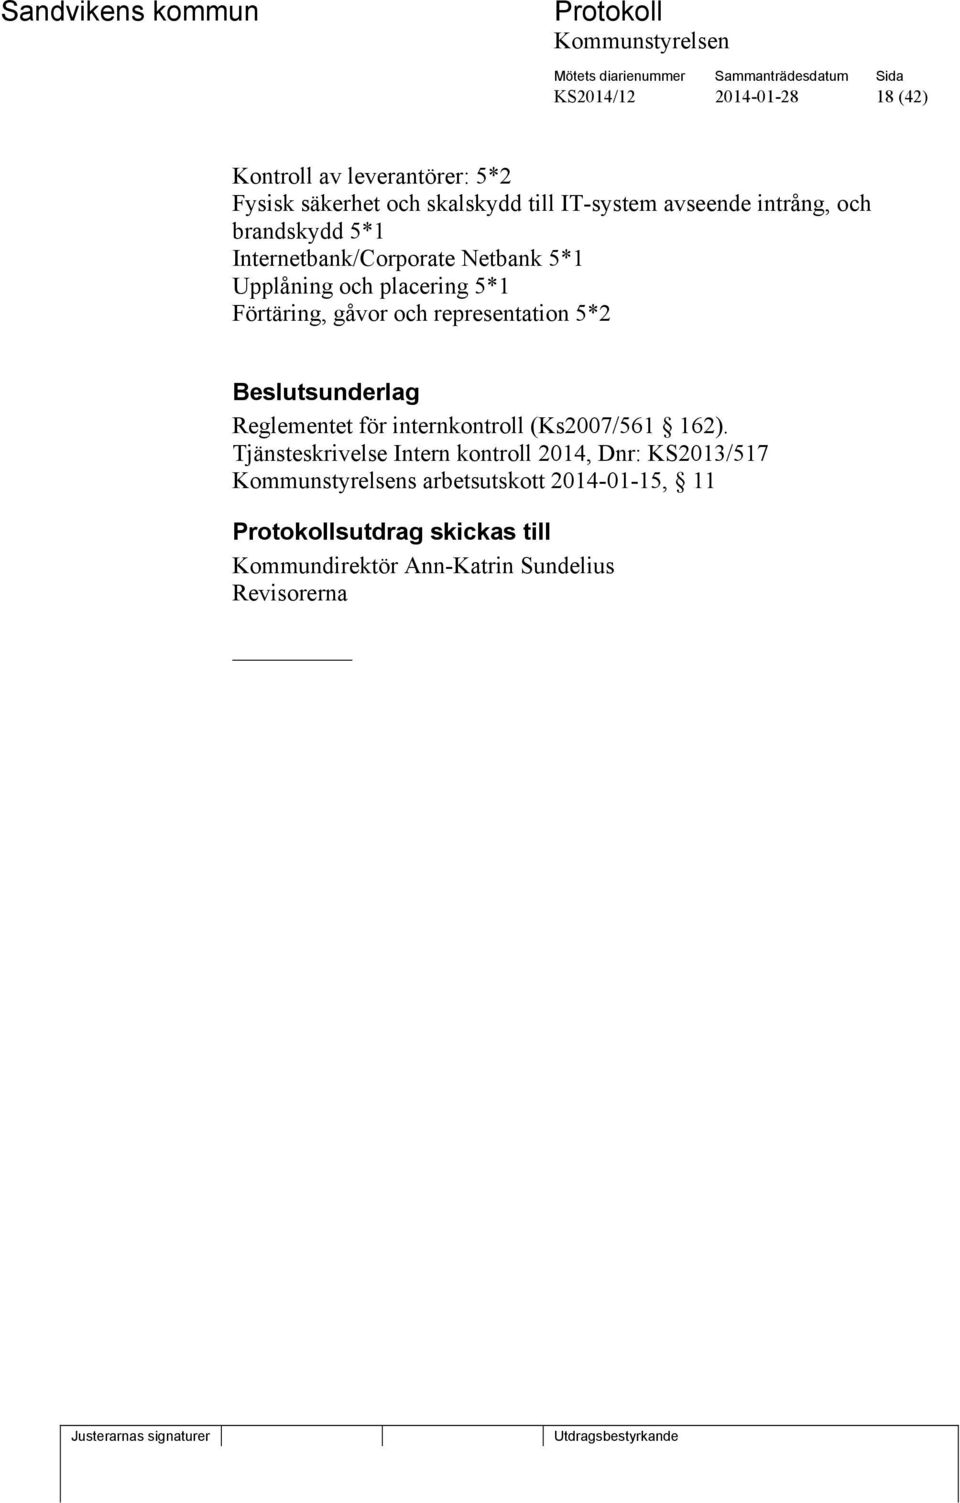 representation 5*2 sunderlag Reglementet för internkontroll (Ks2007/561 162).